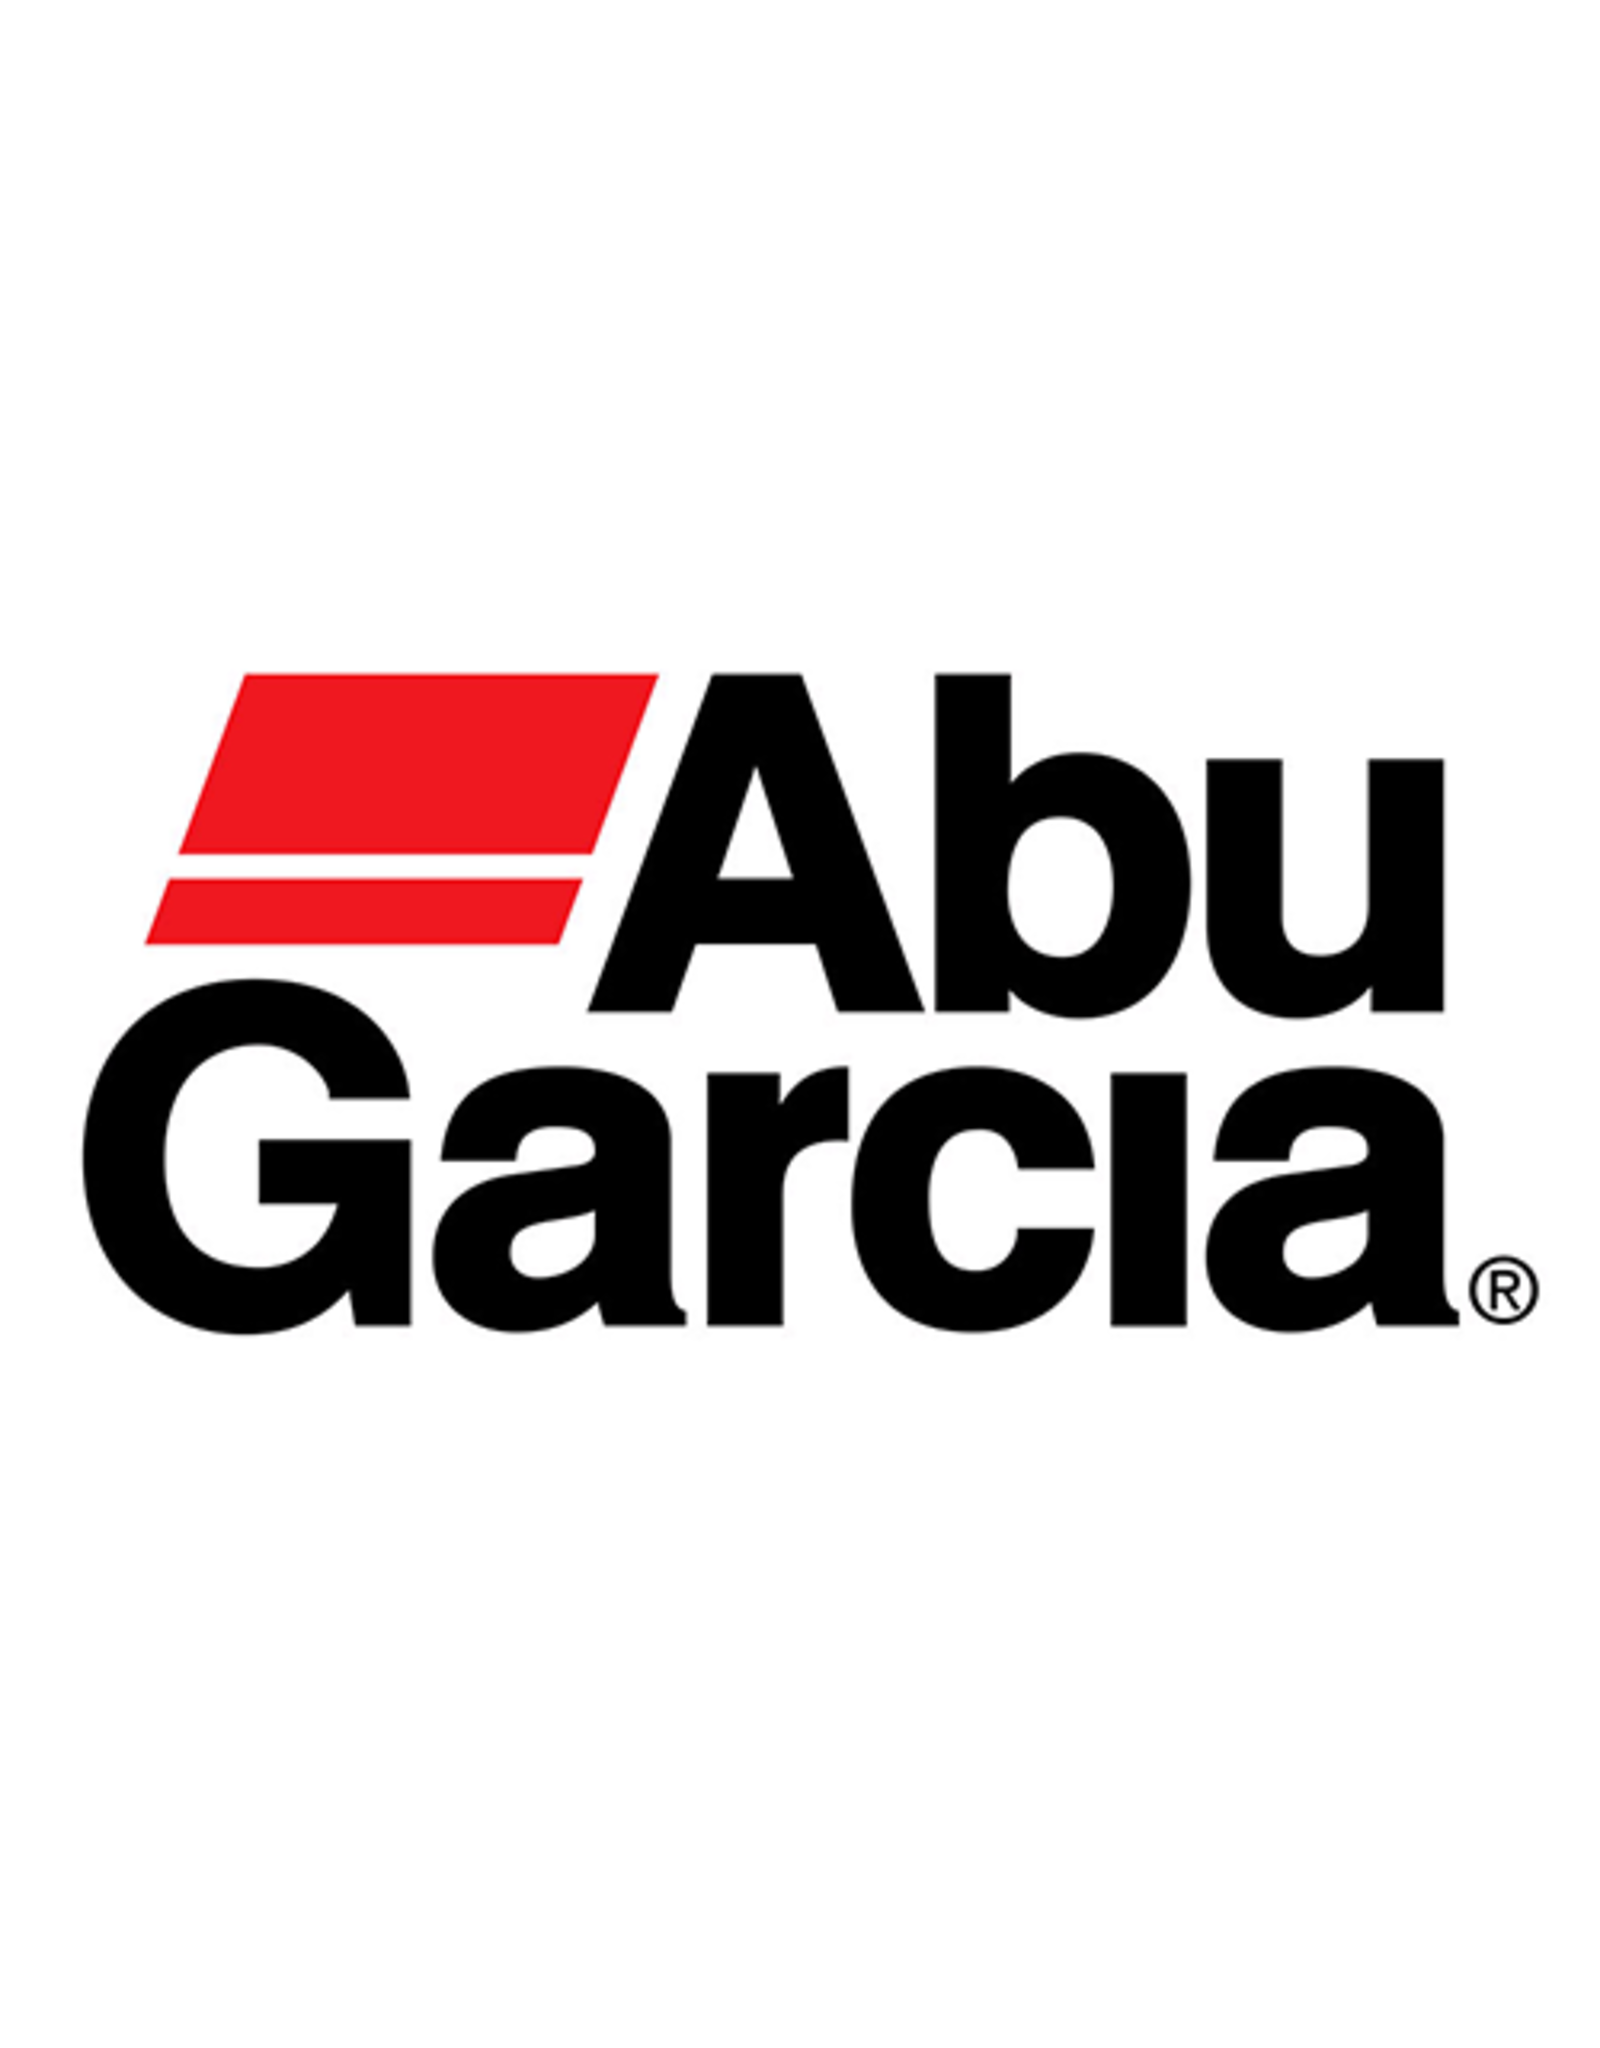 Abu Garcia 1530006  HANDLE ASSY